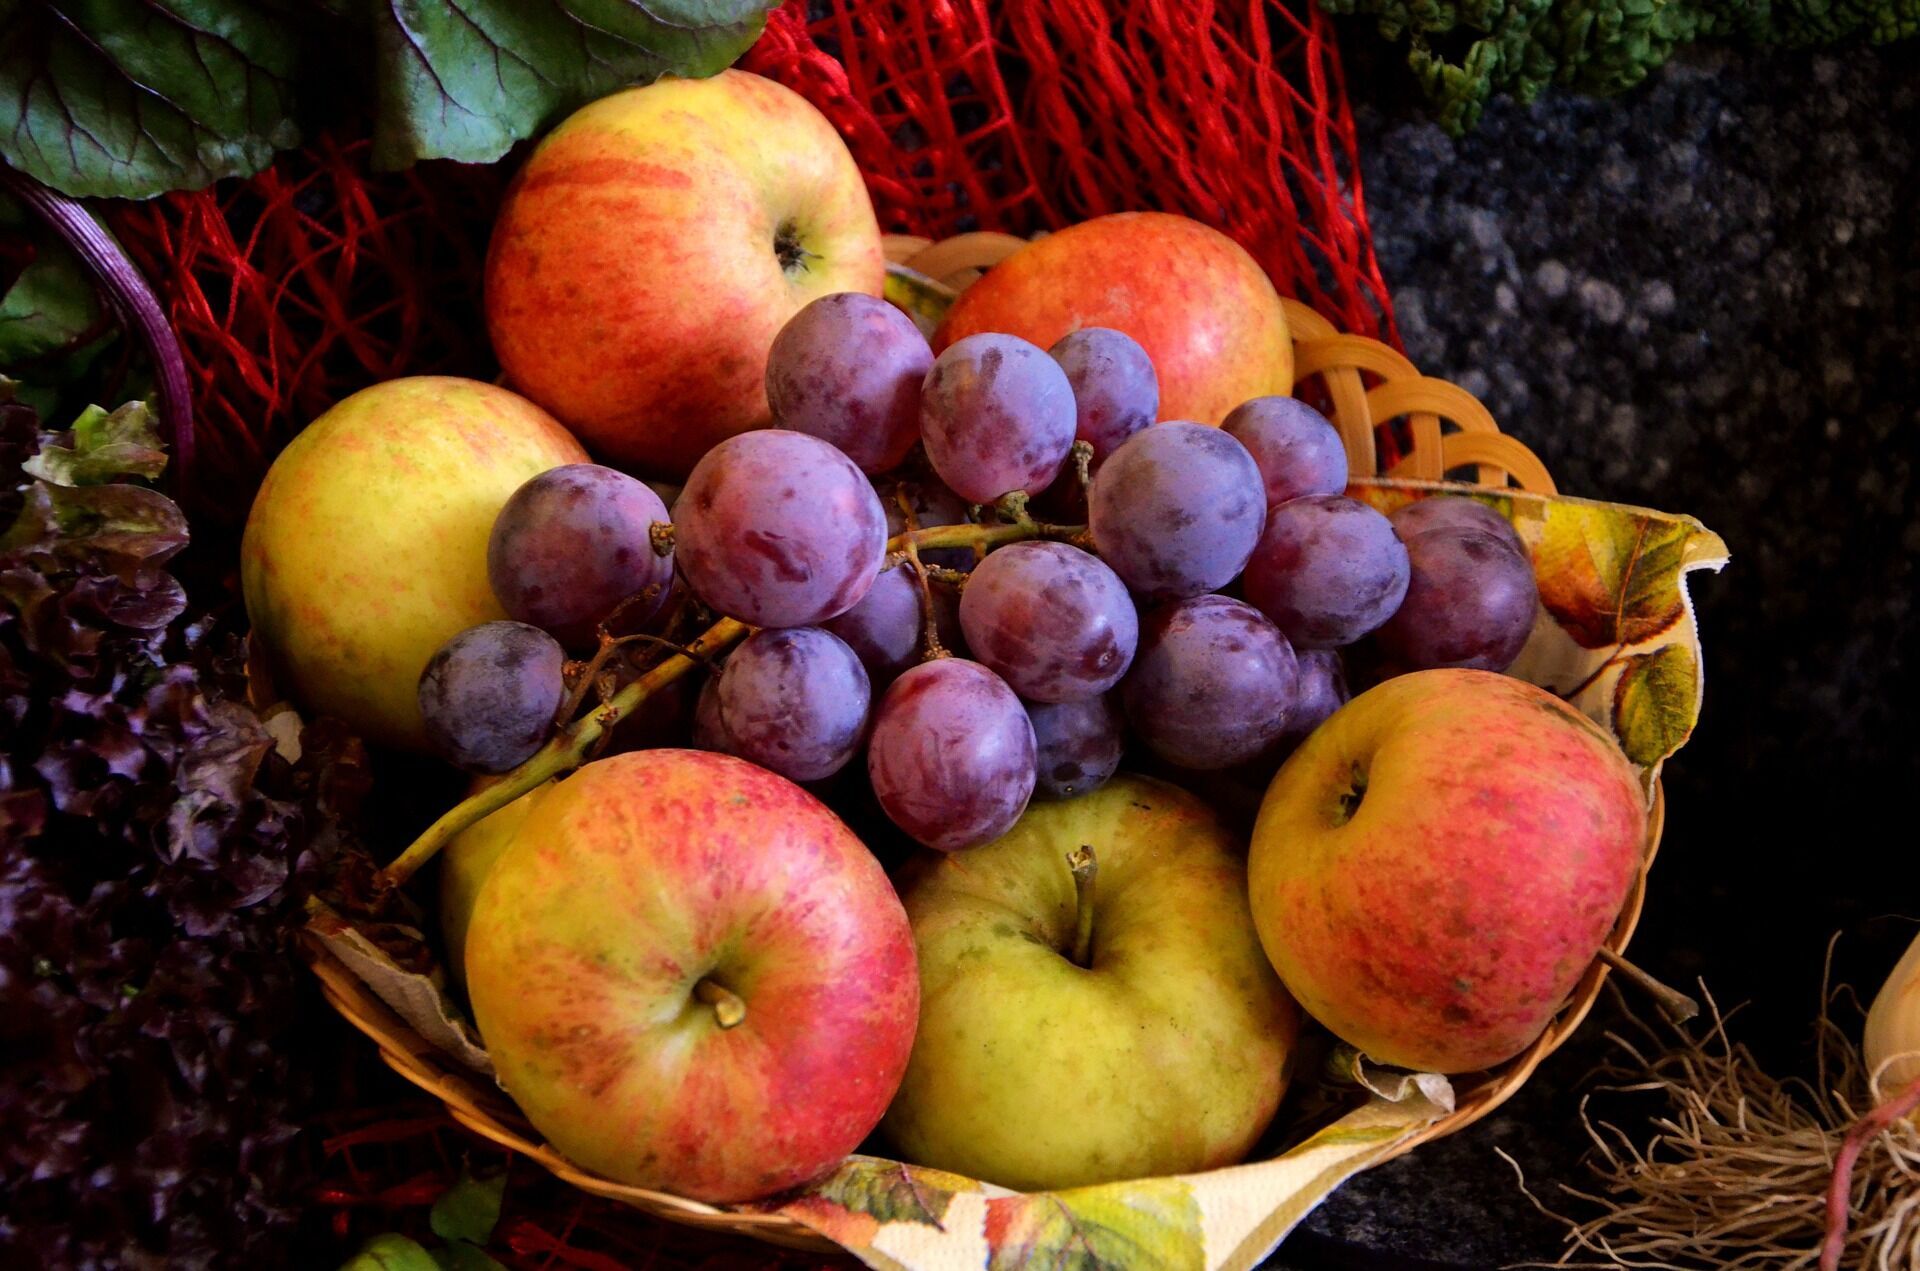 У Яблучний Спас прийнято освячувати яблука та виноград у церкві, а також готувати різні страви з яблук